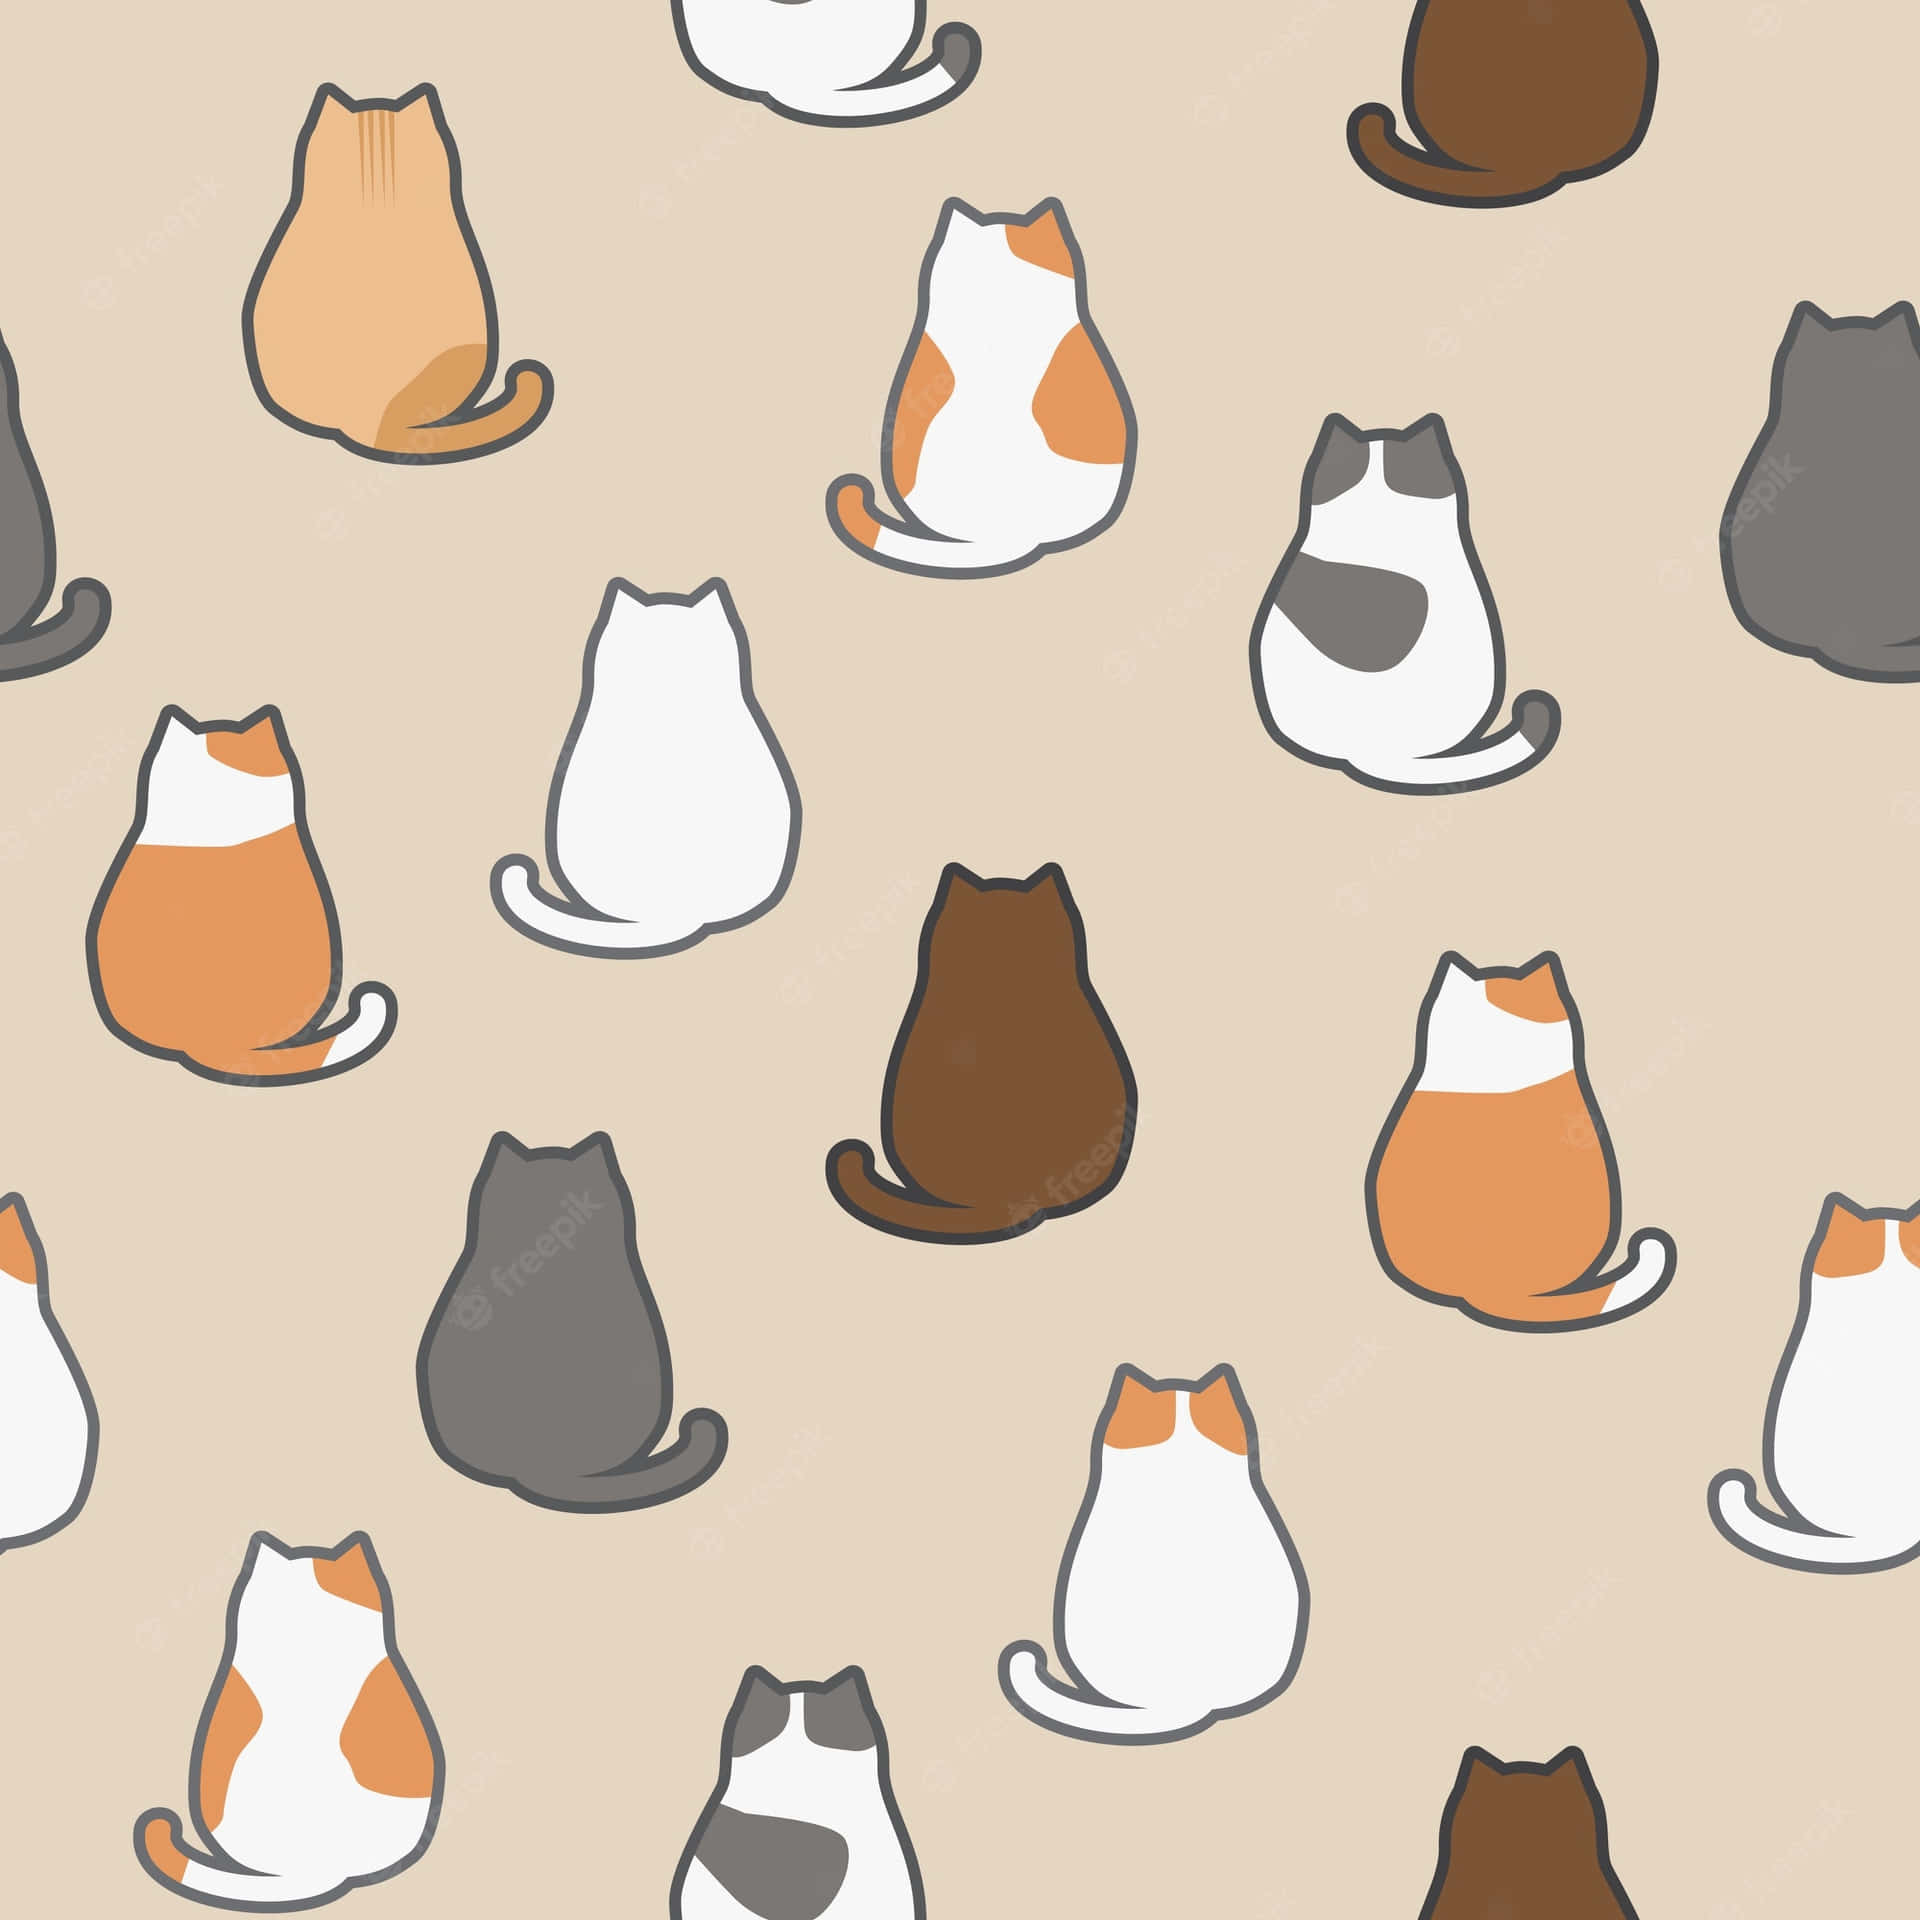 Cartoon Animal Backs Of Cats Wallpaper